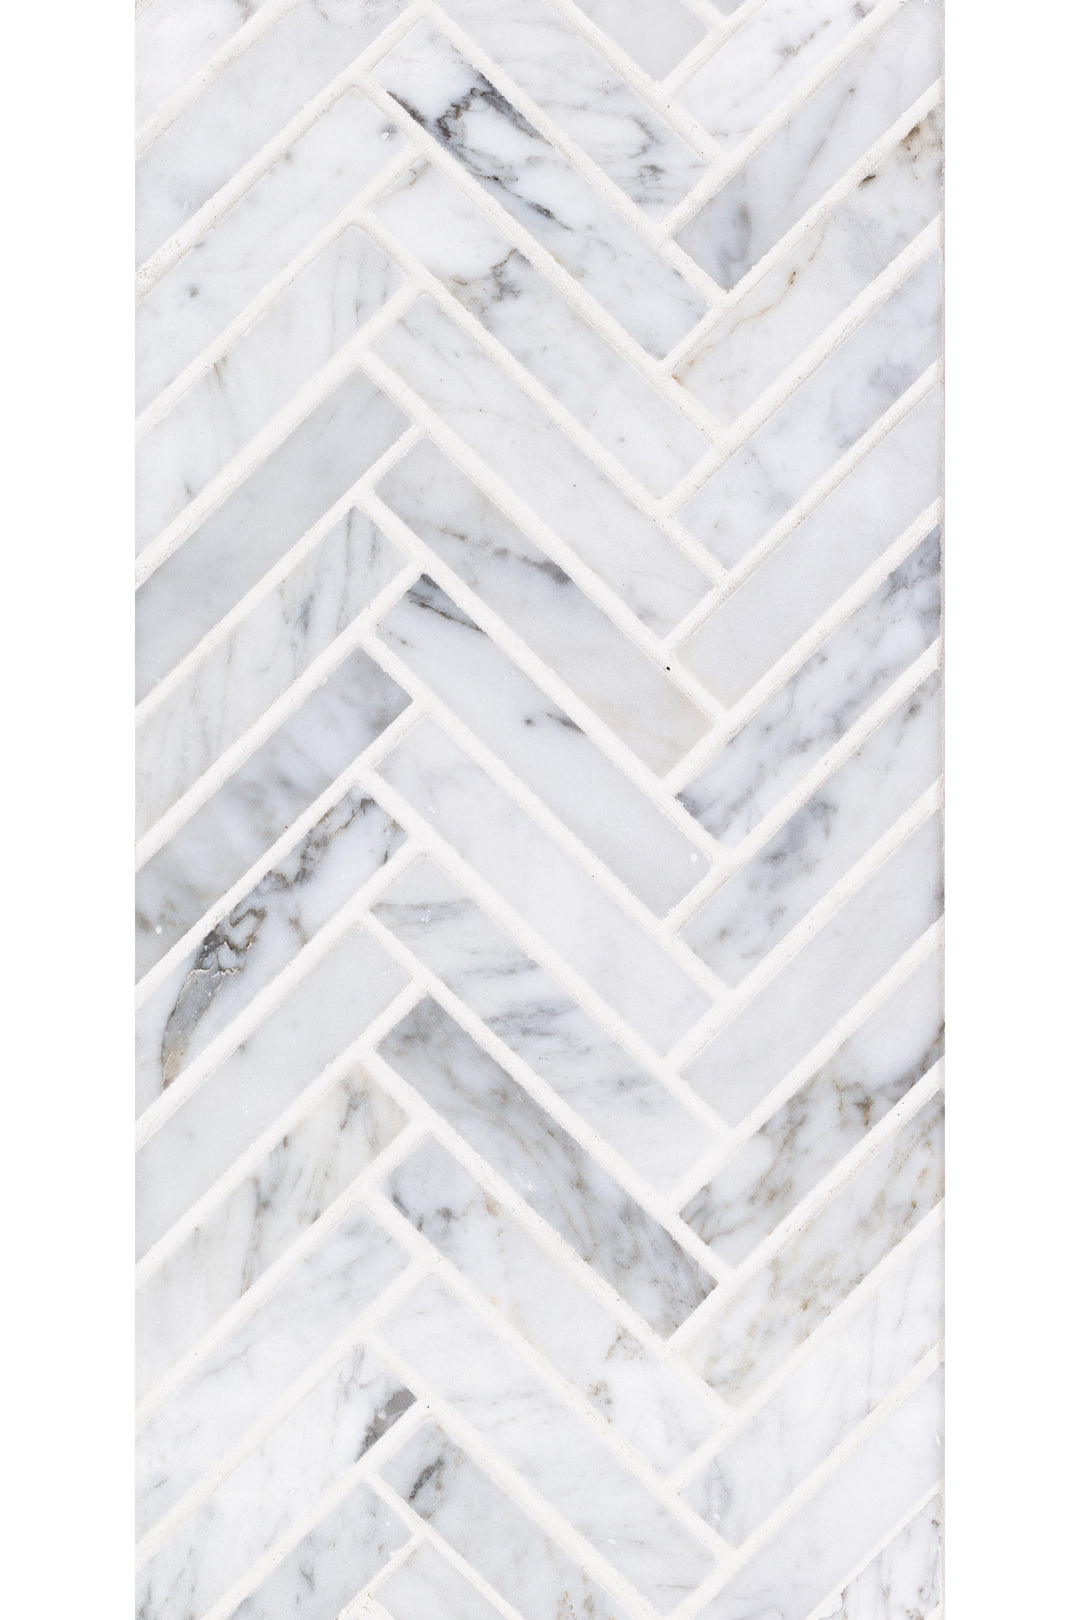 Sto-Re 5/8X3 Herringbone Marble Mosaic 10X11 Carrara Polished